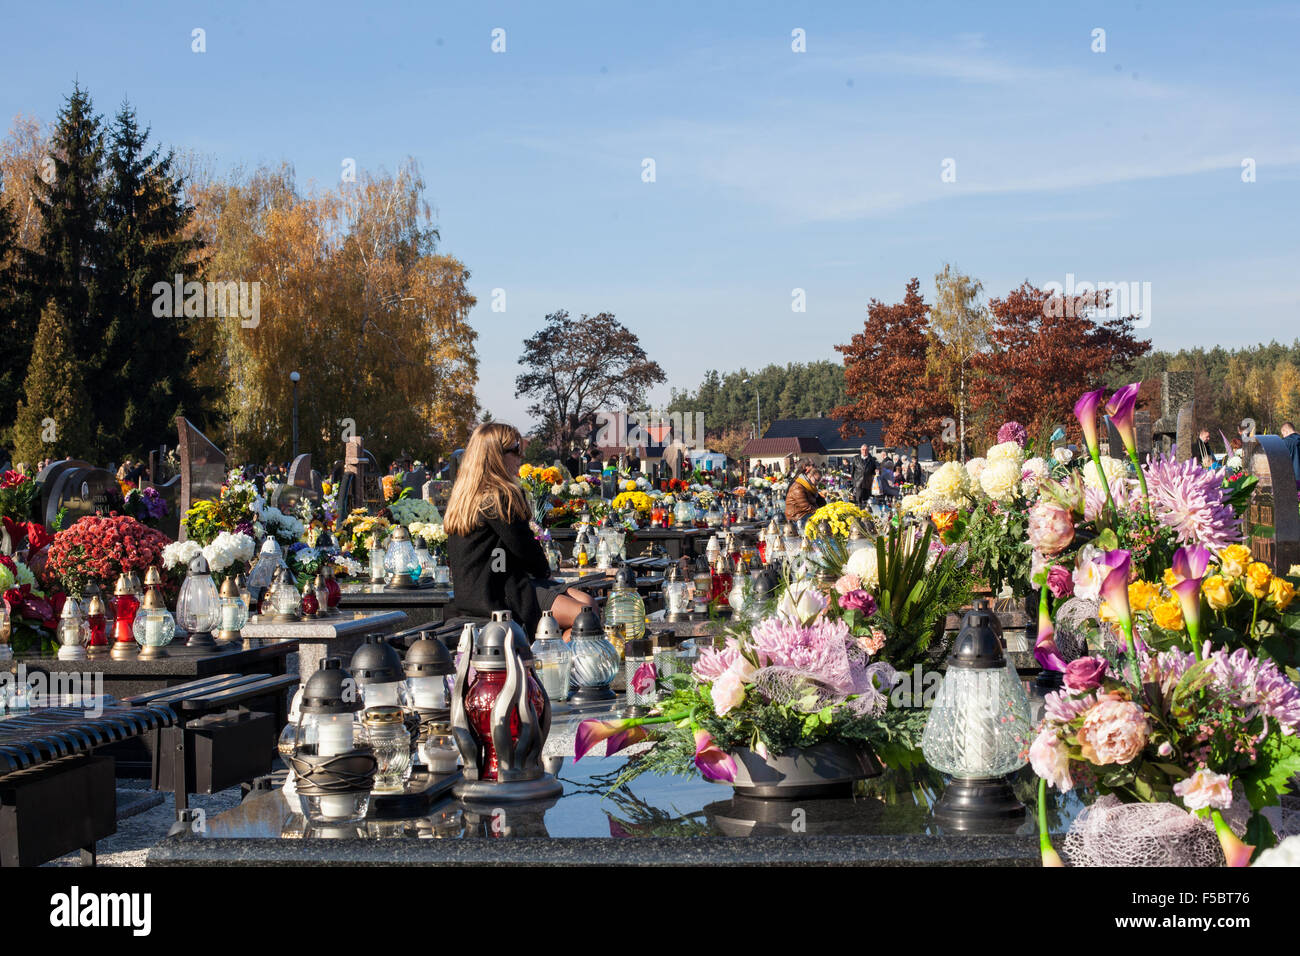 Allerseelen in Polen am 1. November 2015. Allerseelen ist ein wichtiger Feiertag in Polen. Viele Menschen versammeln sich auf Friedhöfen, Respekt an ihre lieben zu geben, die bereits tot sind. Besucher leuchtet und bringen Blumen mit ihnen. Stockfoto